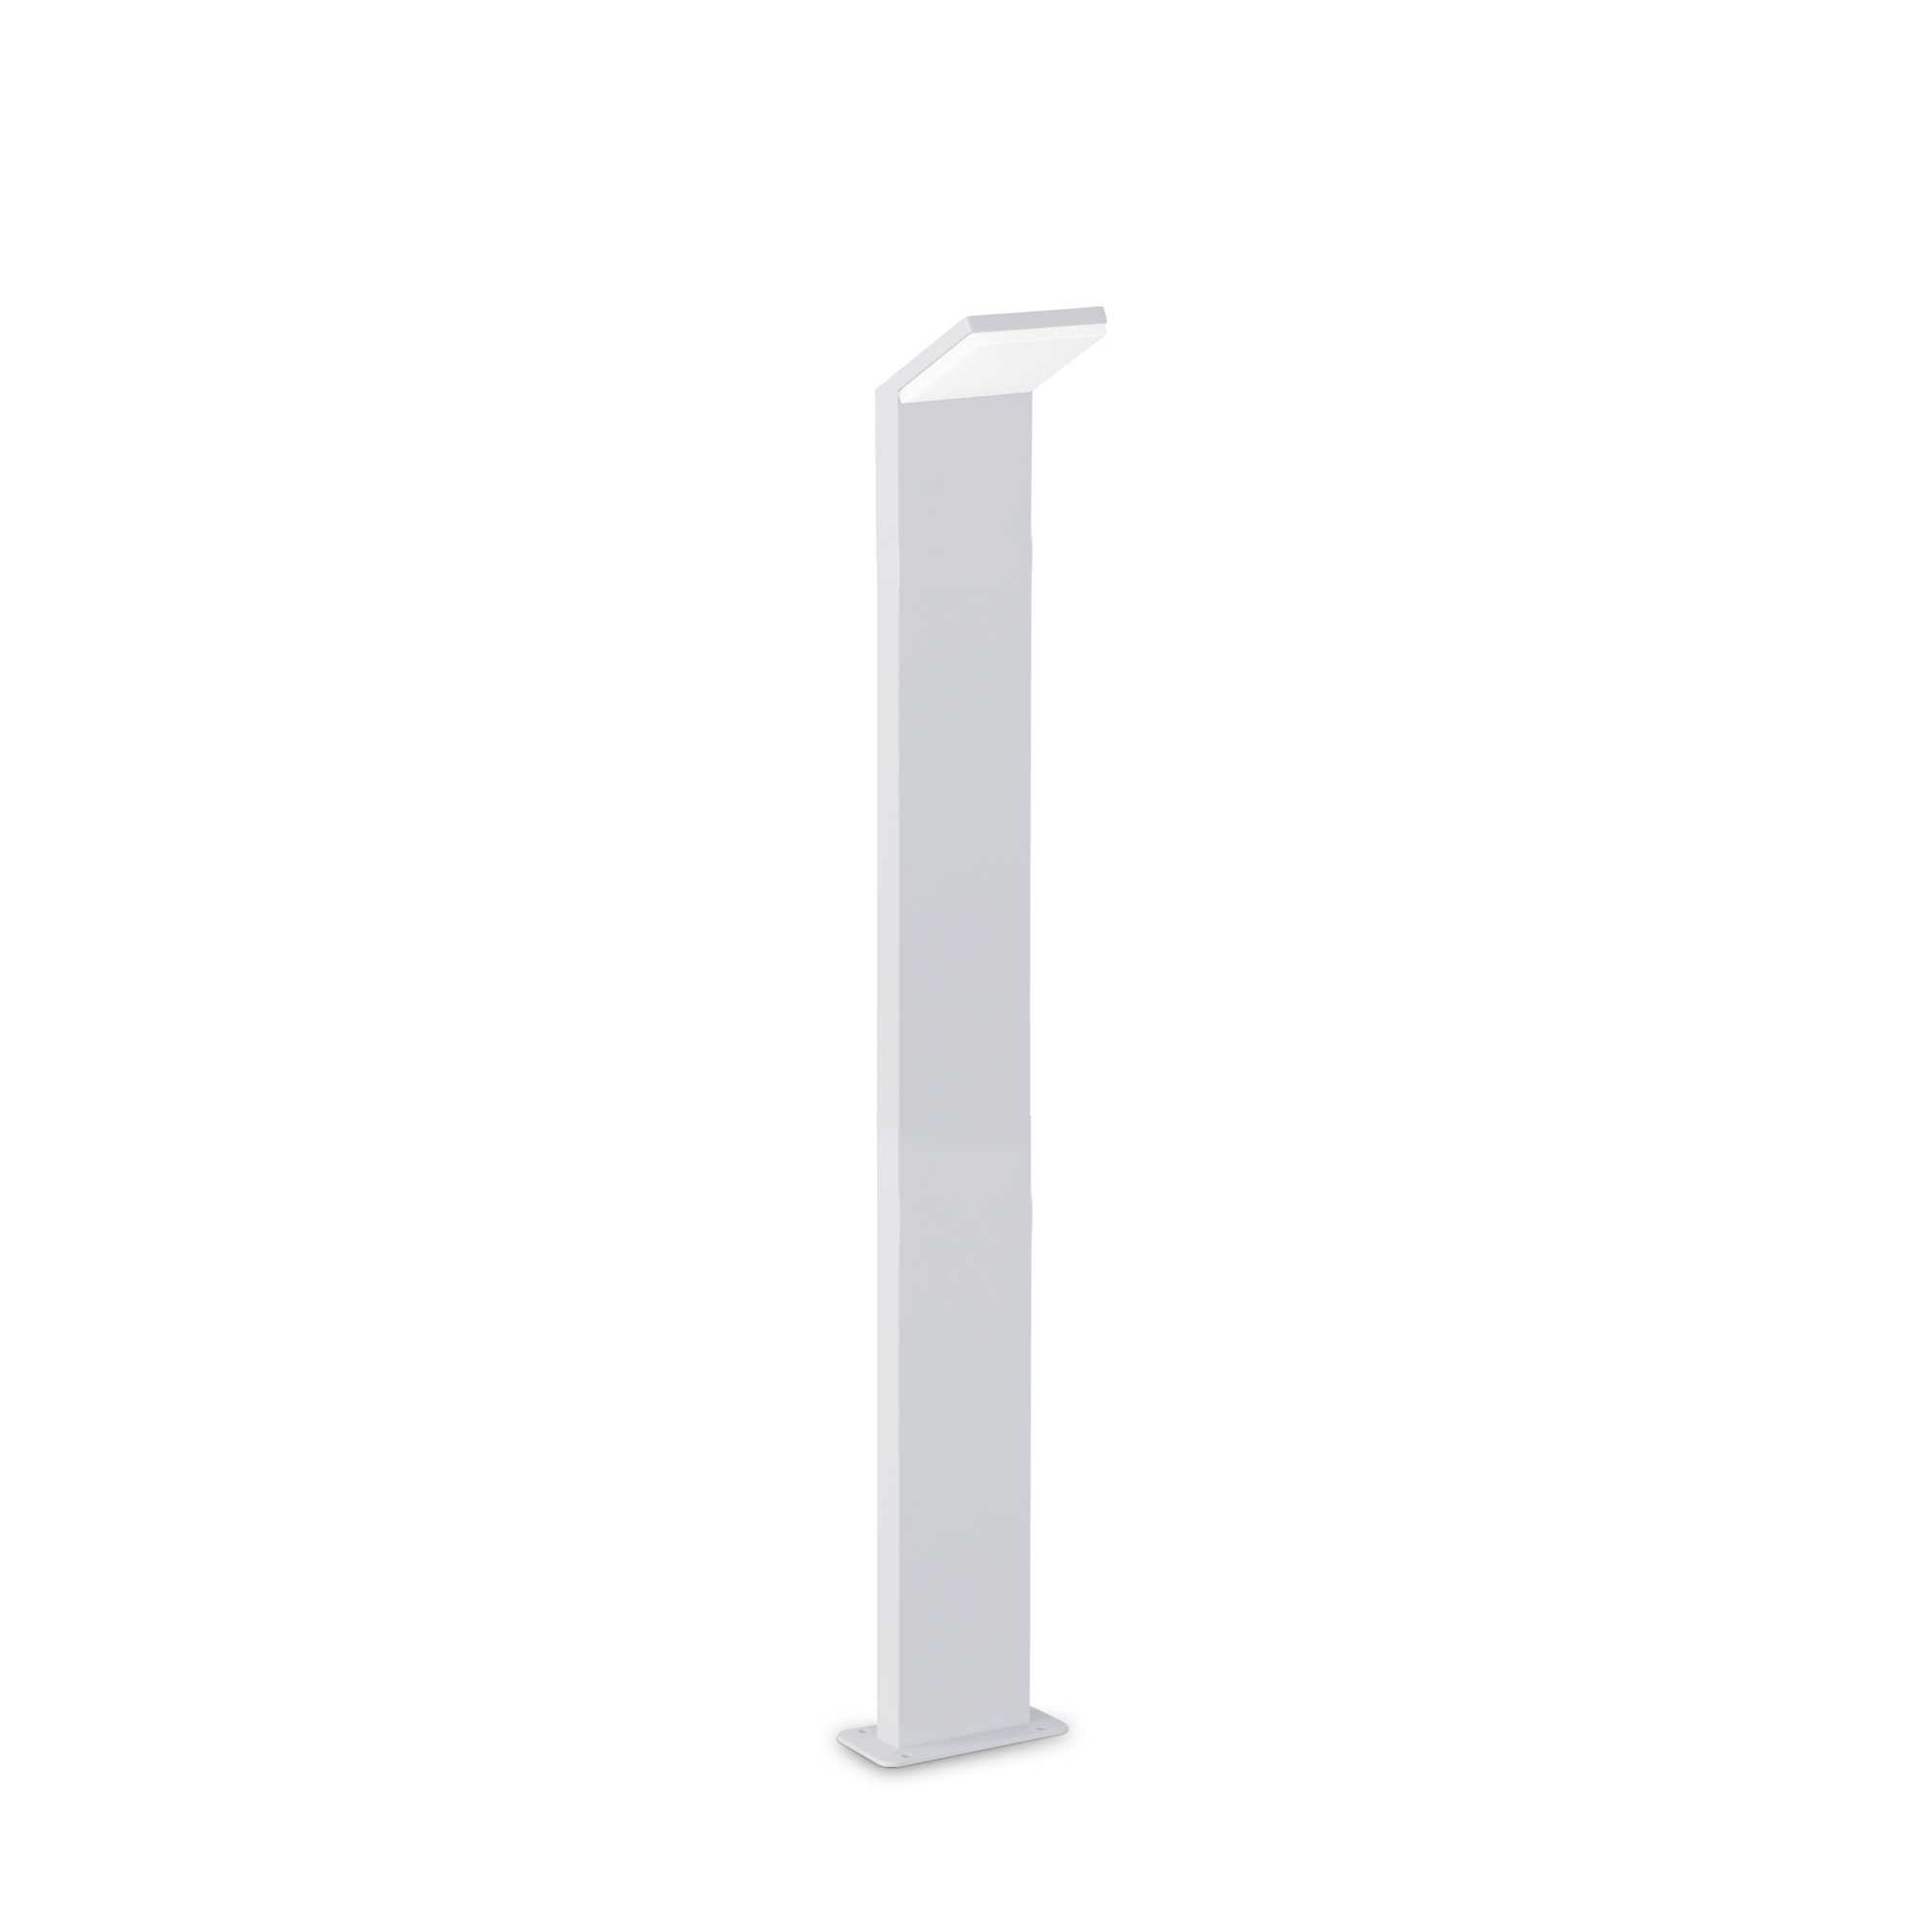 AD hotelska oprema Vanjska podna lampa Style pt h100 (4000k)- Bijele boje slika proizvoda